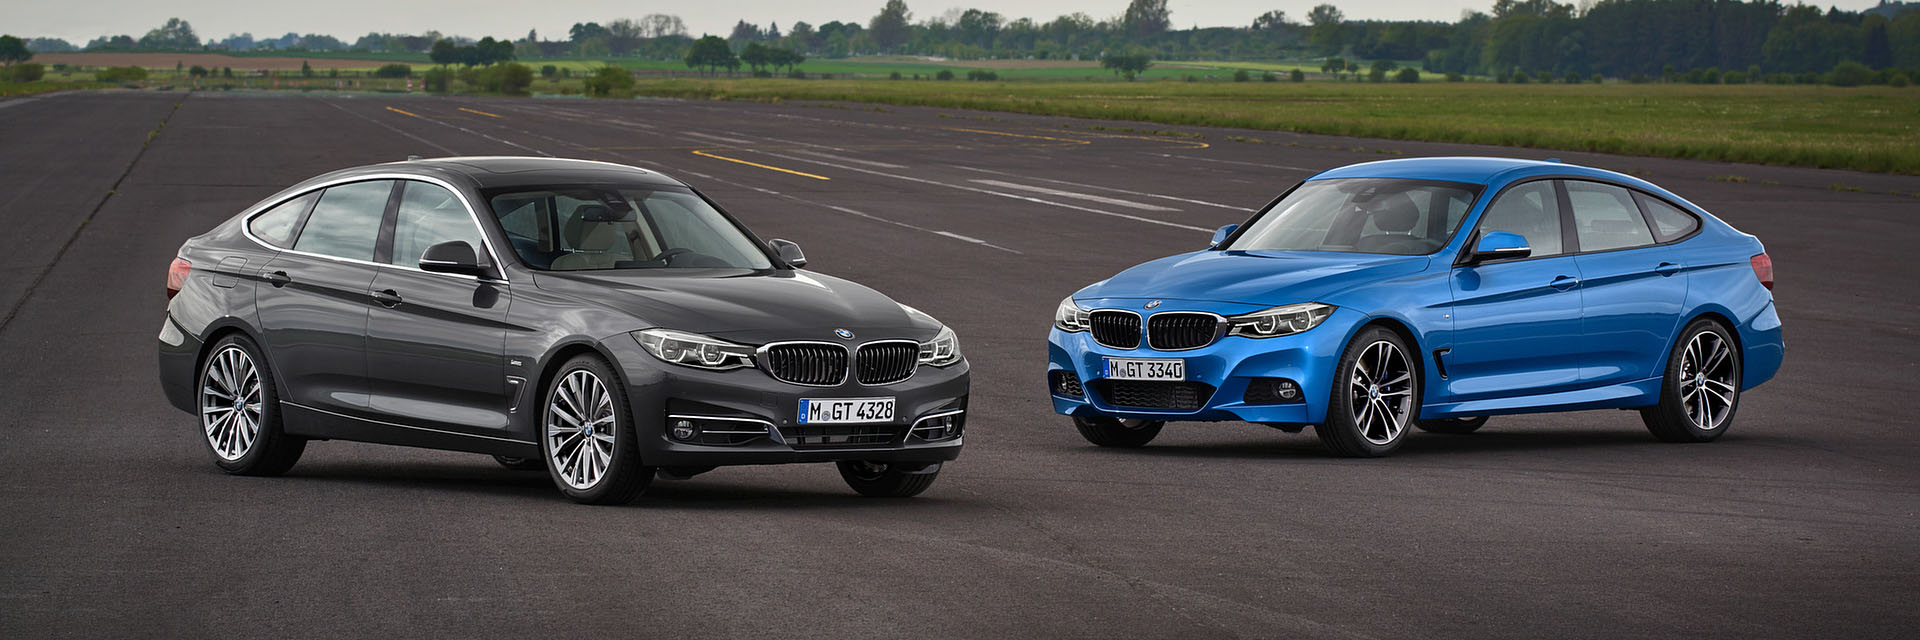 BMW SERIE 3 GT, carros novos, carros km0, carros serviço, carros usados